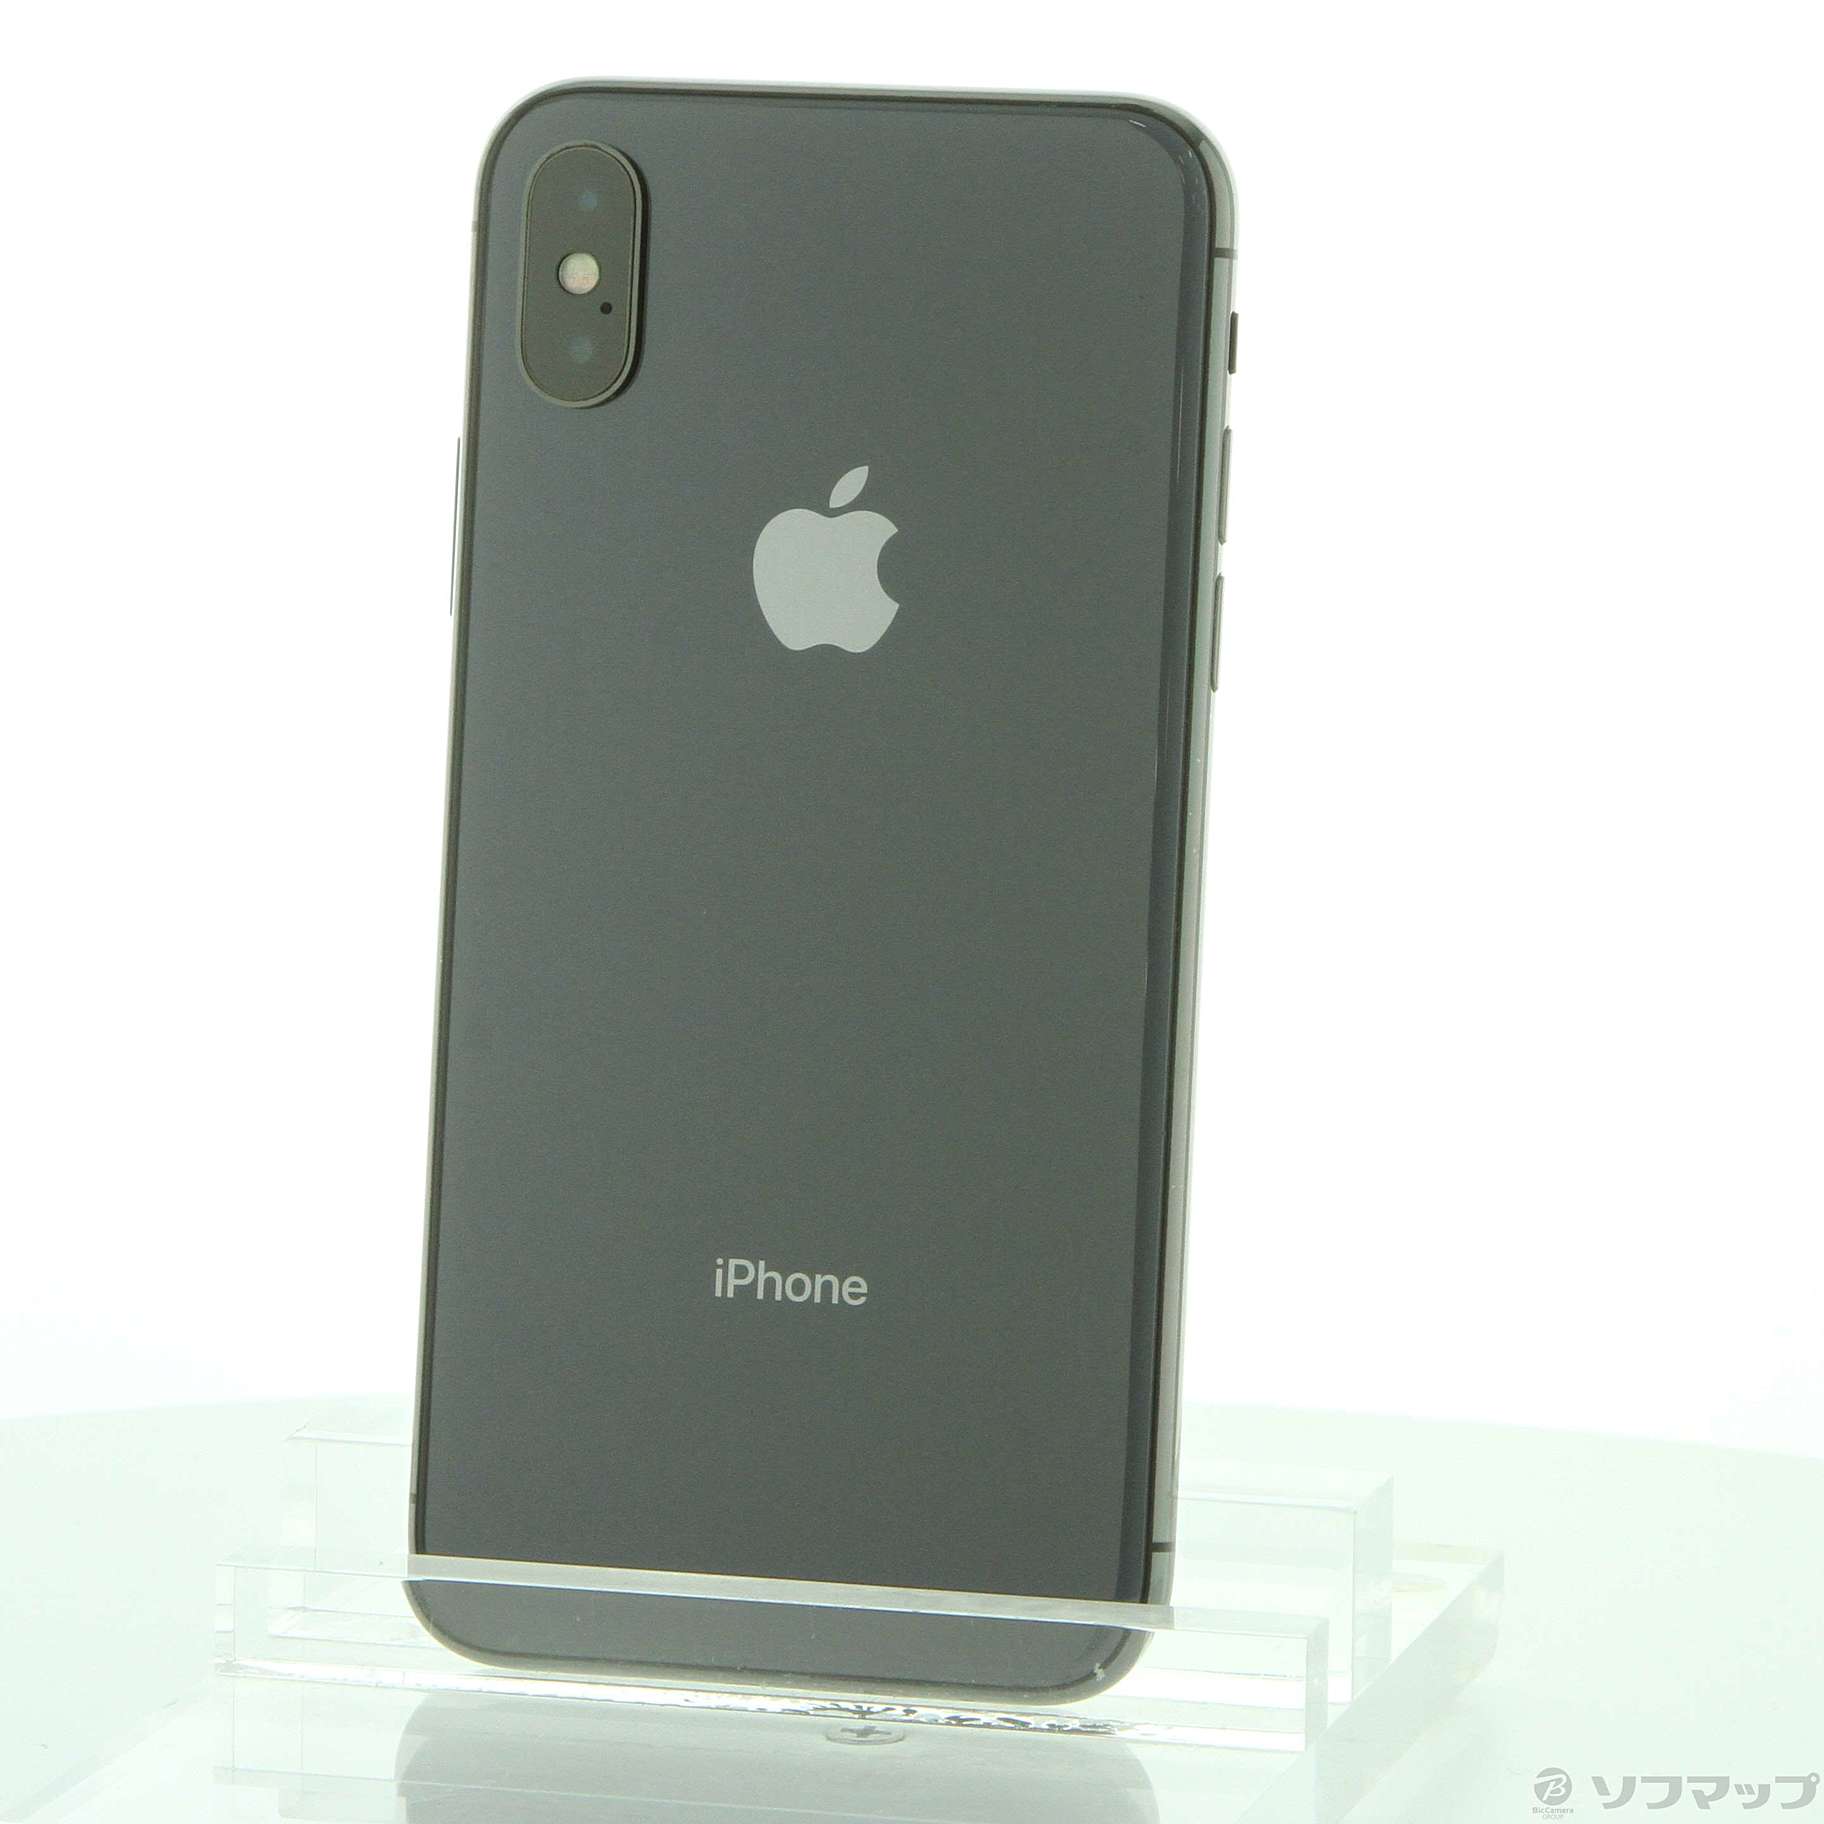 人気定番新品IPhoneX 256GB スペースグレイ スマートフォン本体